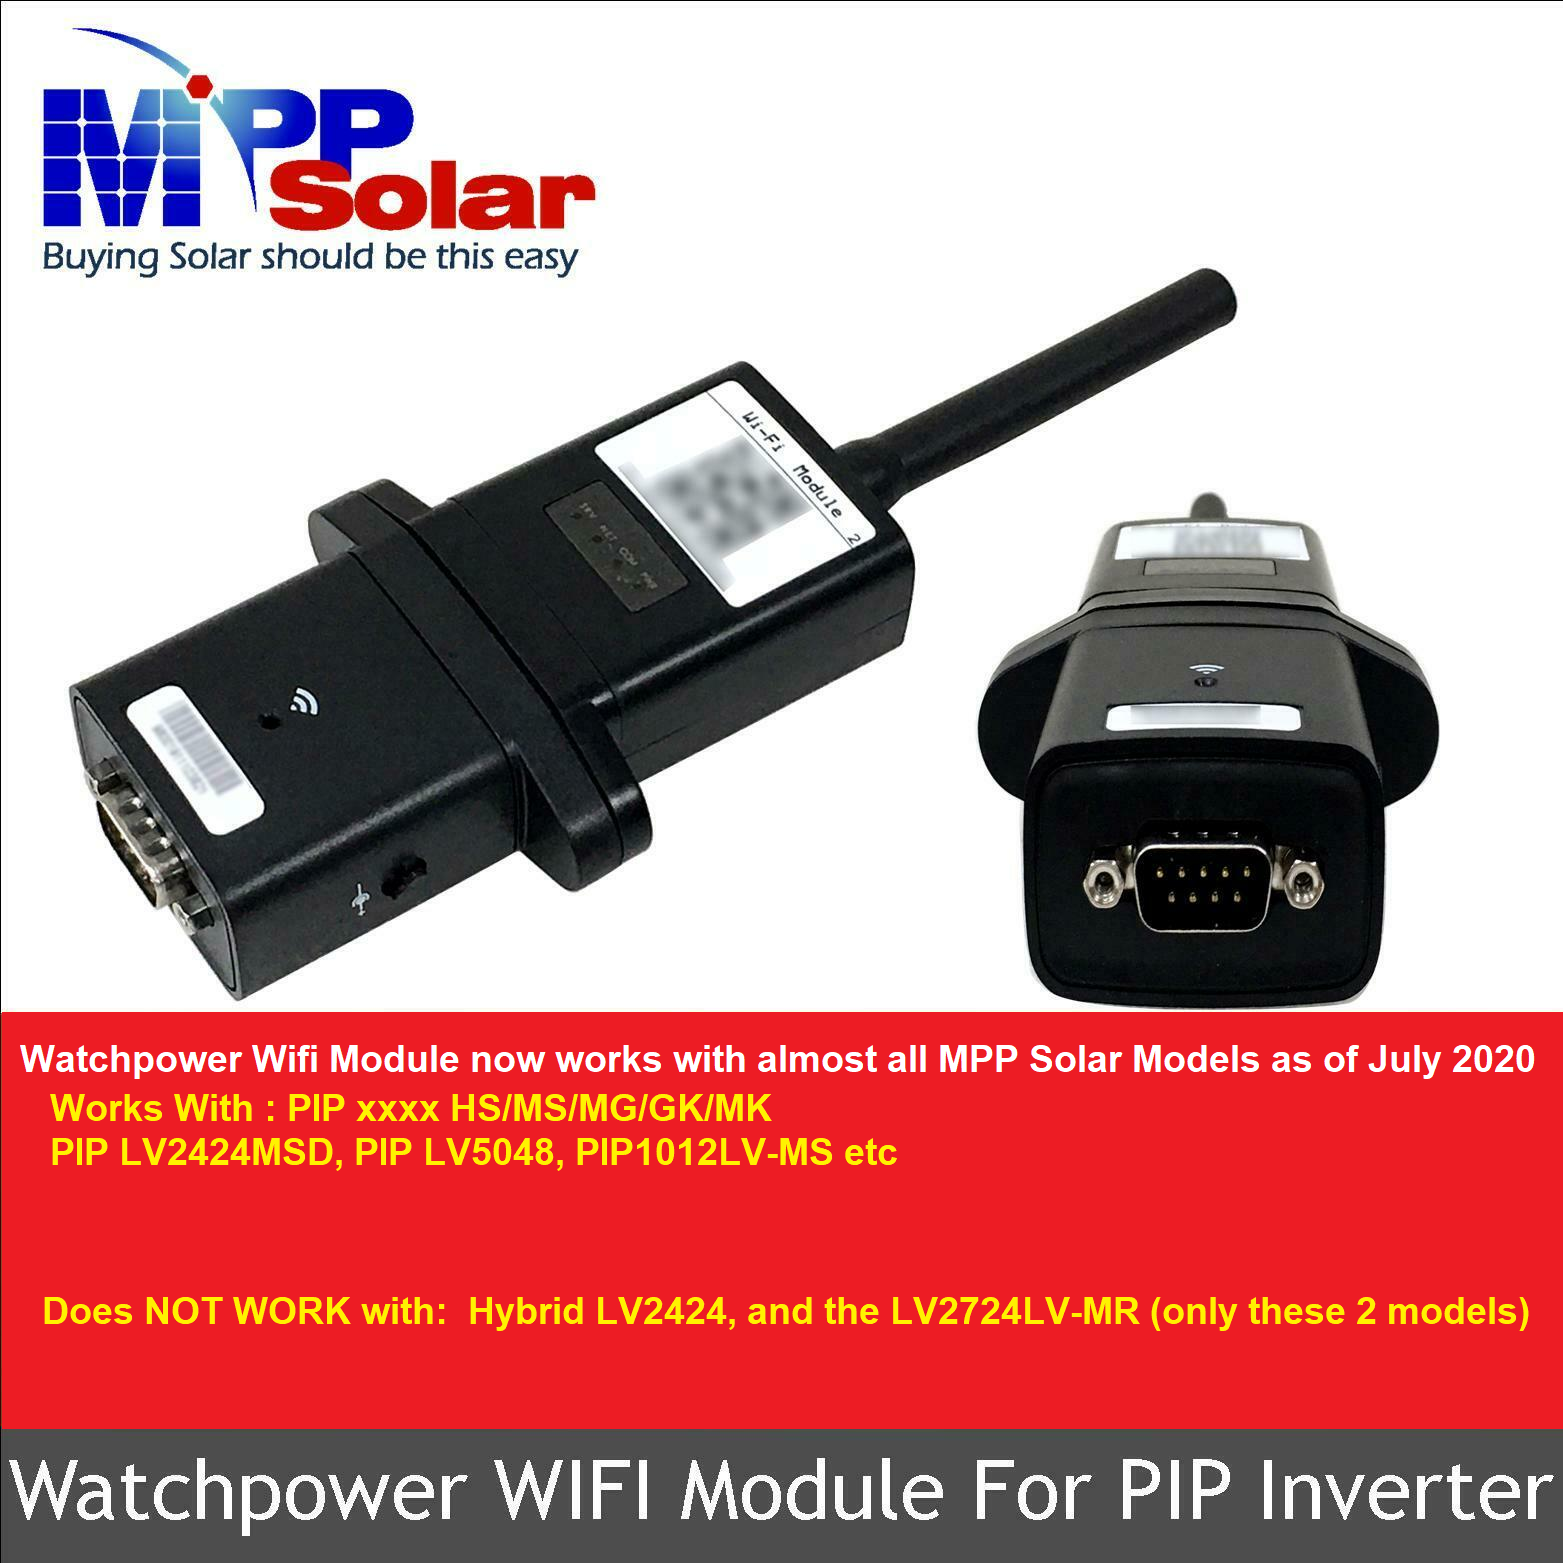 MPP LV6548 6.5kW 120V Inverter